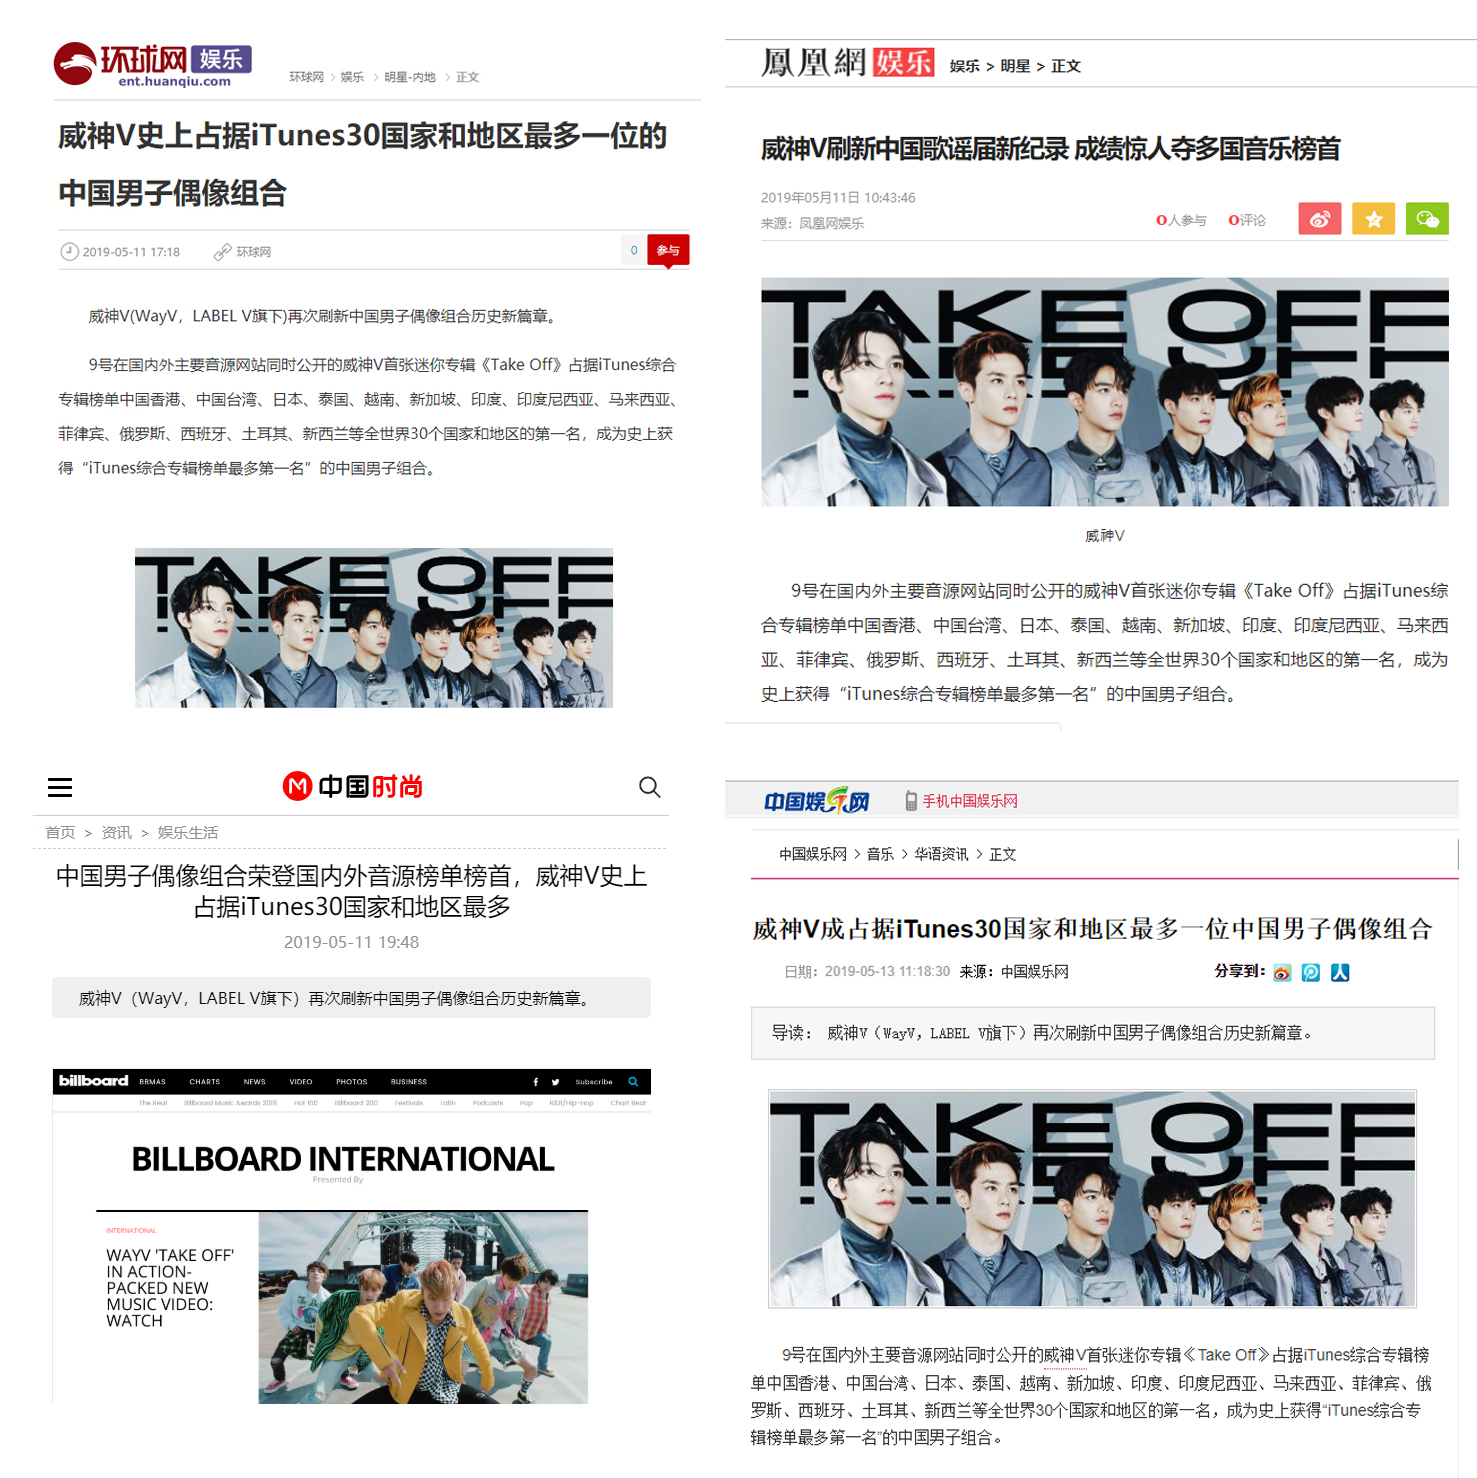 웨이션브이(WayV) 아이튠즈 최다 지역 1위 기록 관련 해외 매체 기사 캡처 이미지(시계방향으로 환구망, 봉황오락, 중국오락망, 중국시상망).JPG